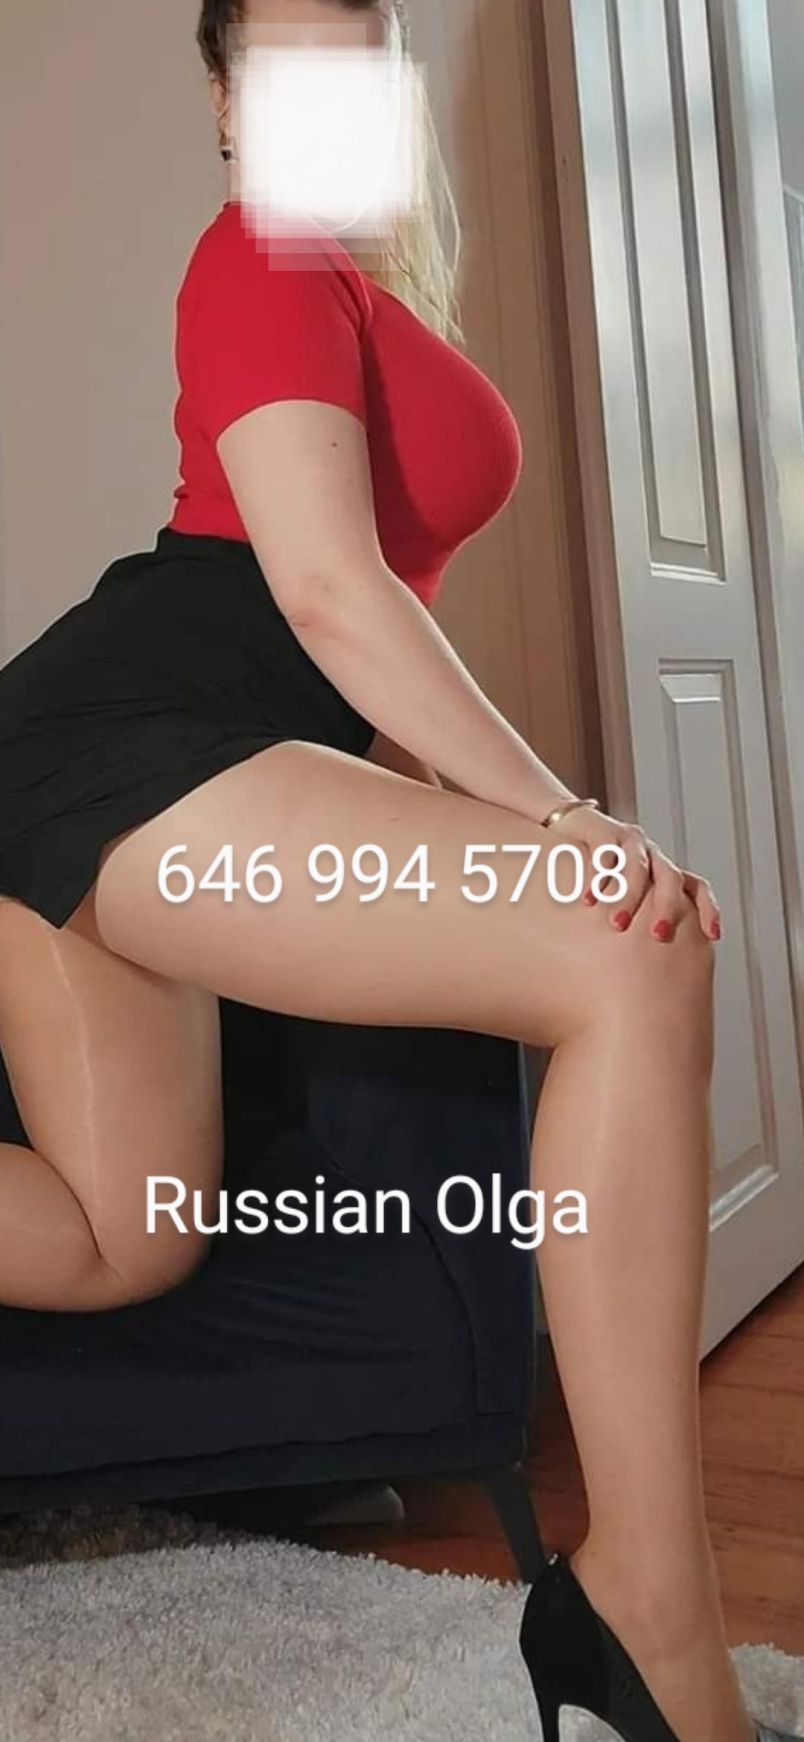 Olga 1